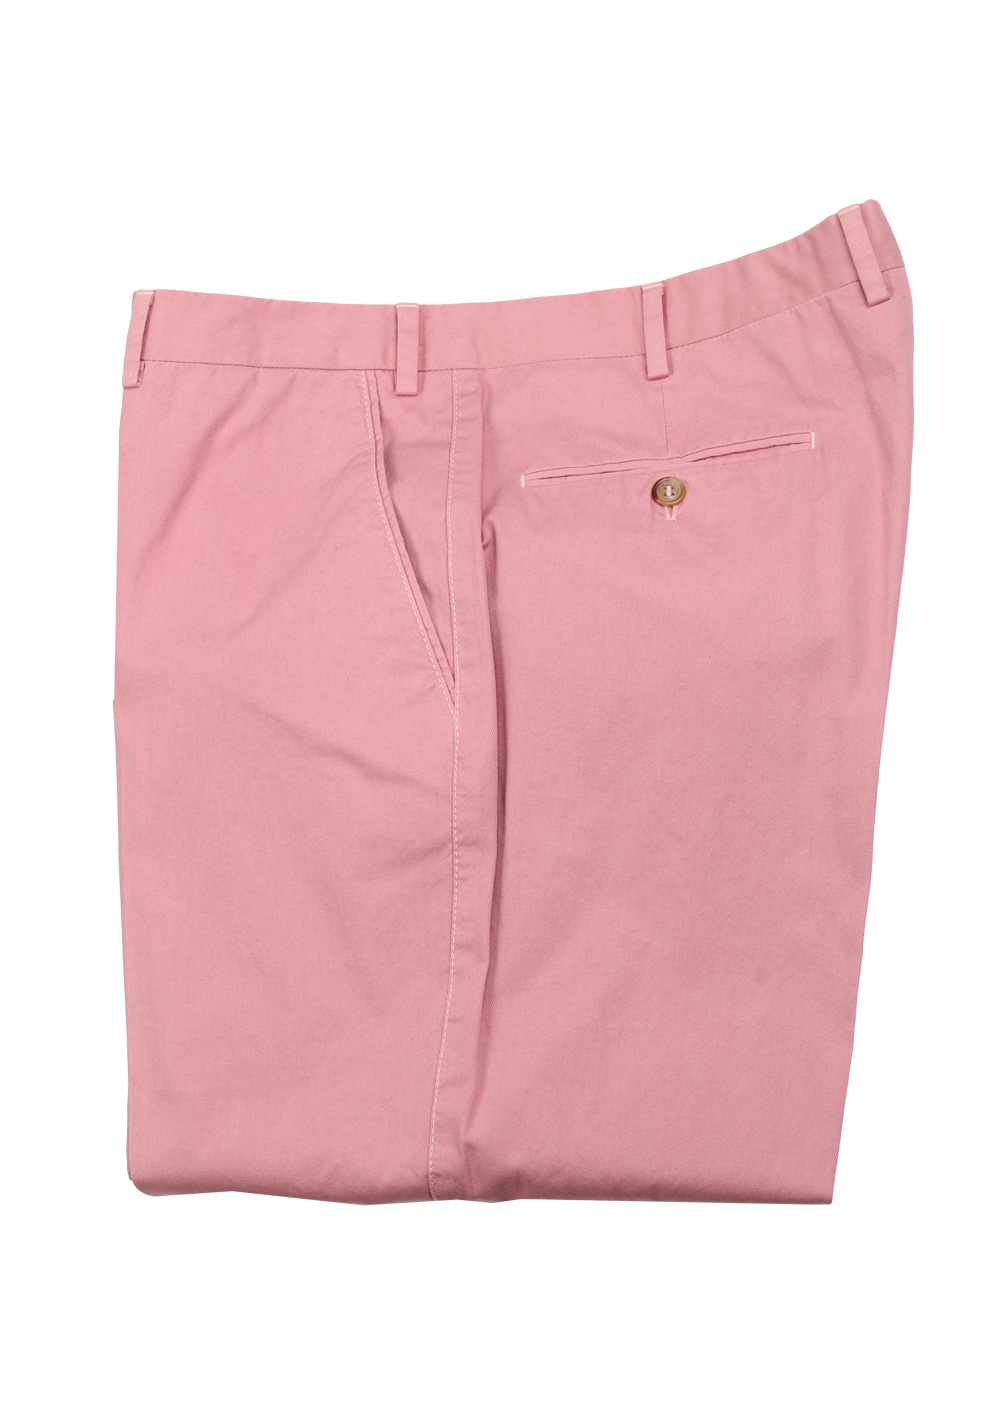 Brioni Pink Cotton Trousers Size 54 / 38 U.S. | Costume Limité